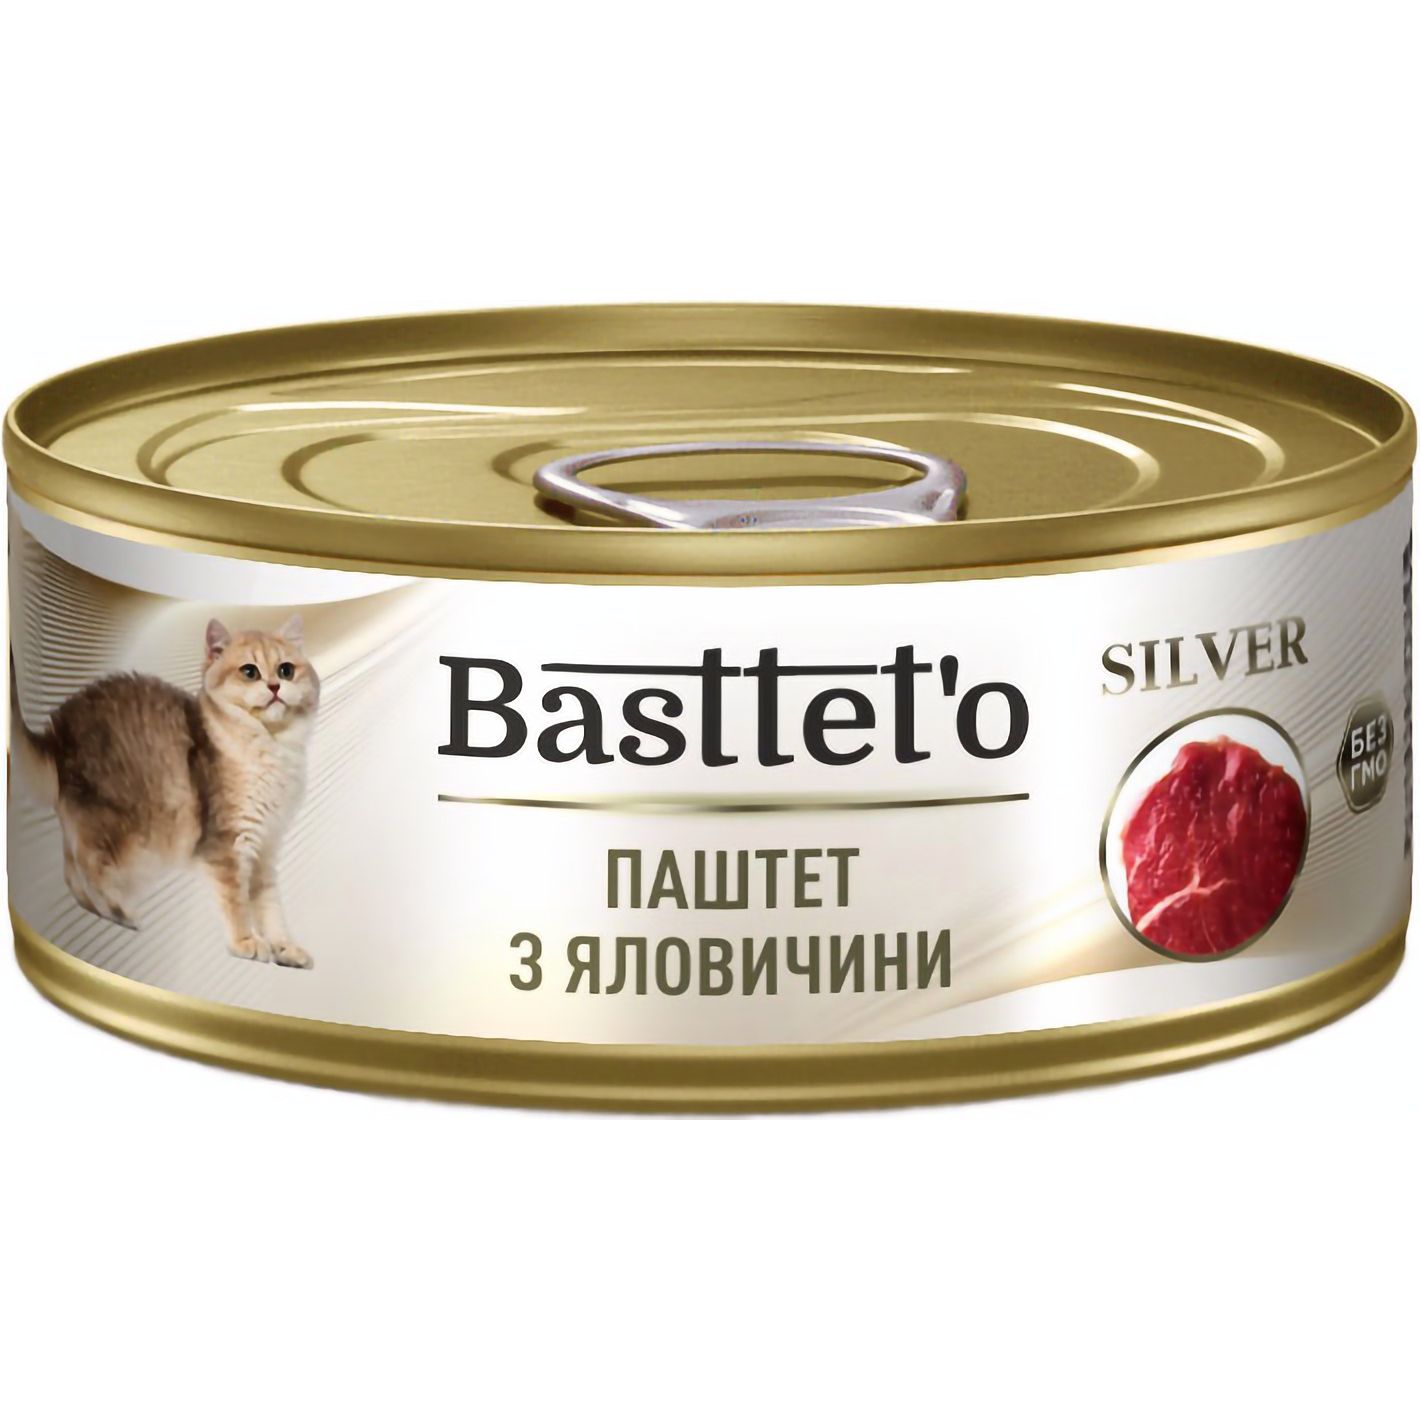 Влажный корм для котов Basttet'o Silver паштет из говядины 85 г - фото 1